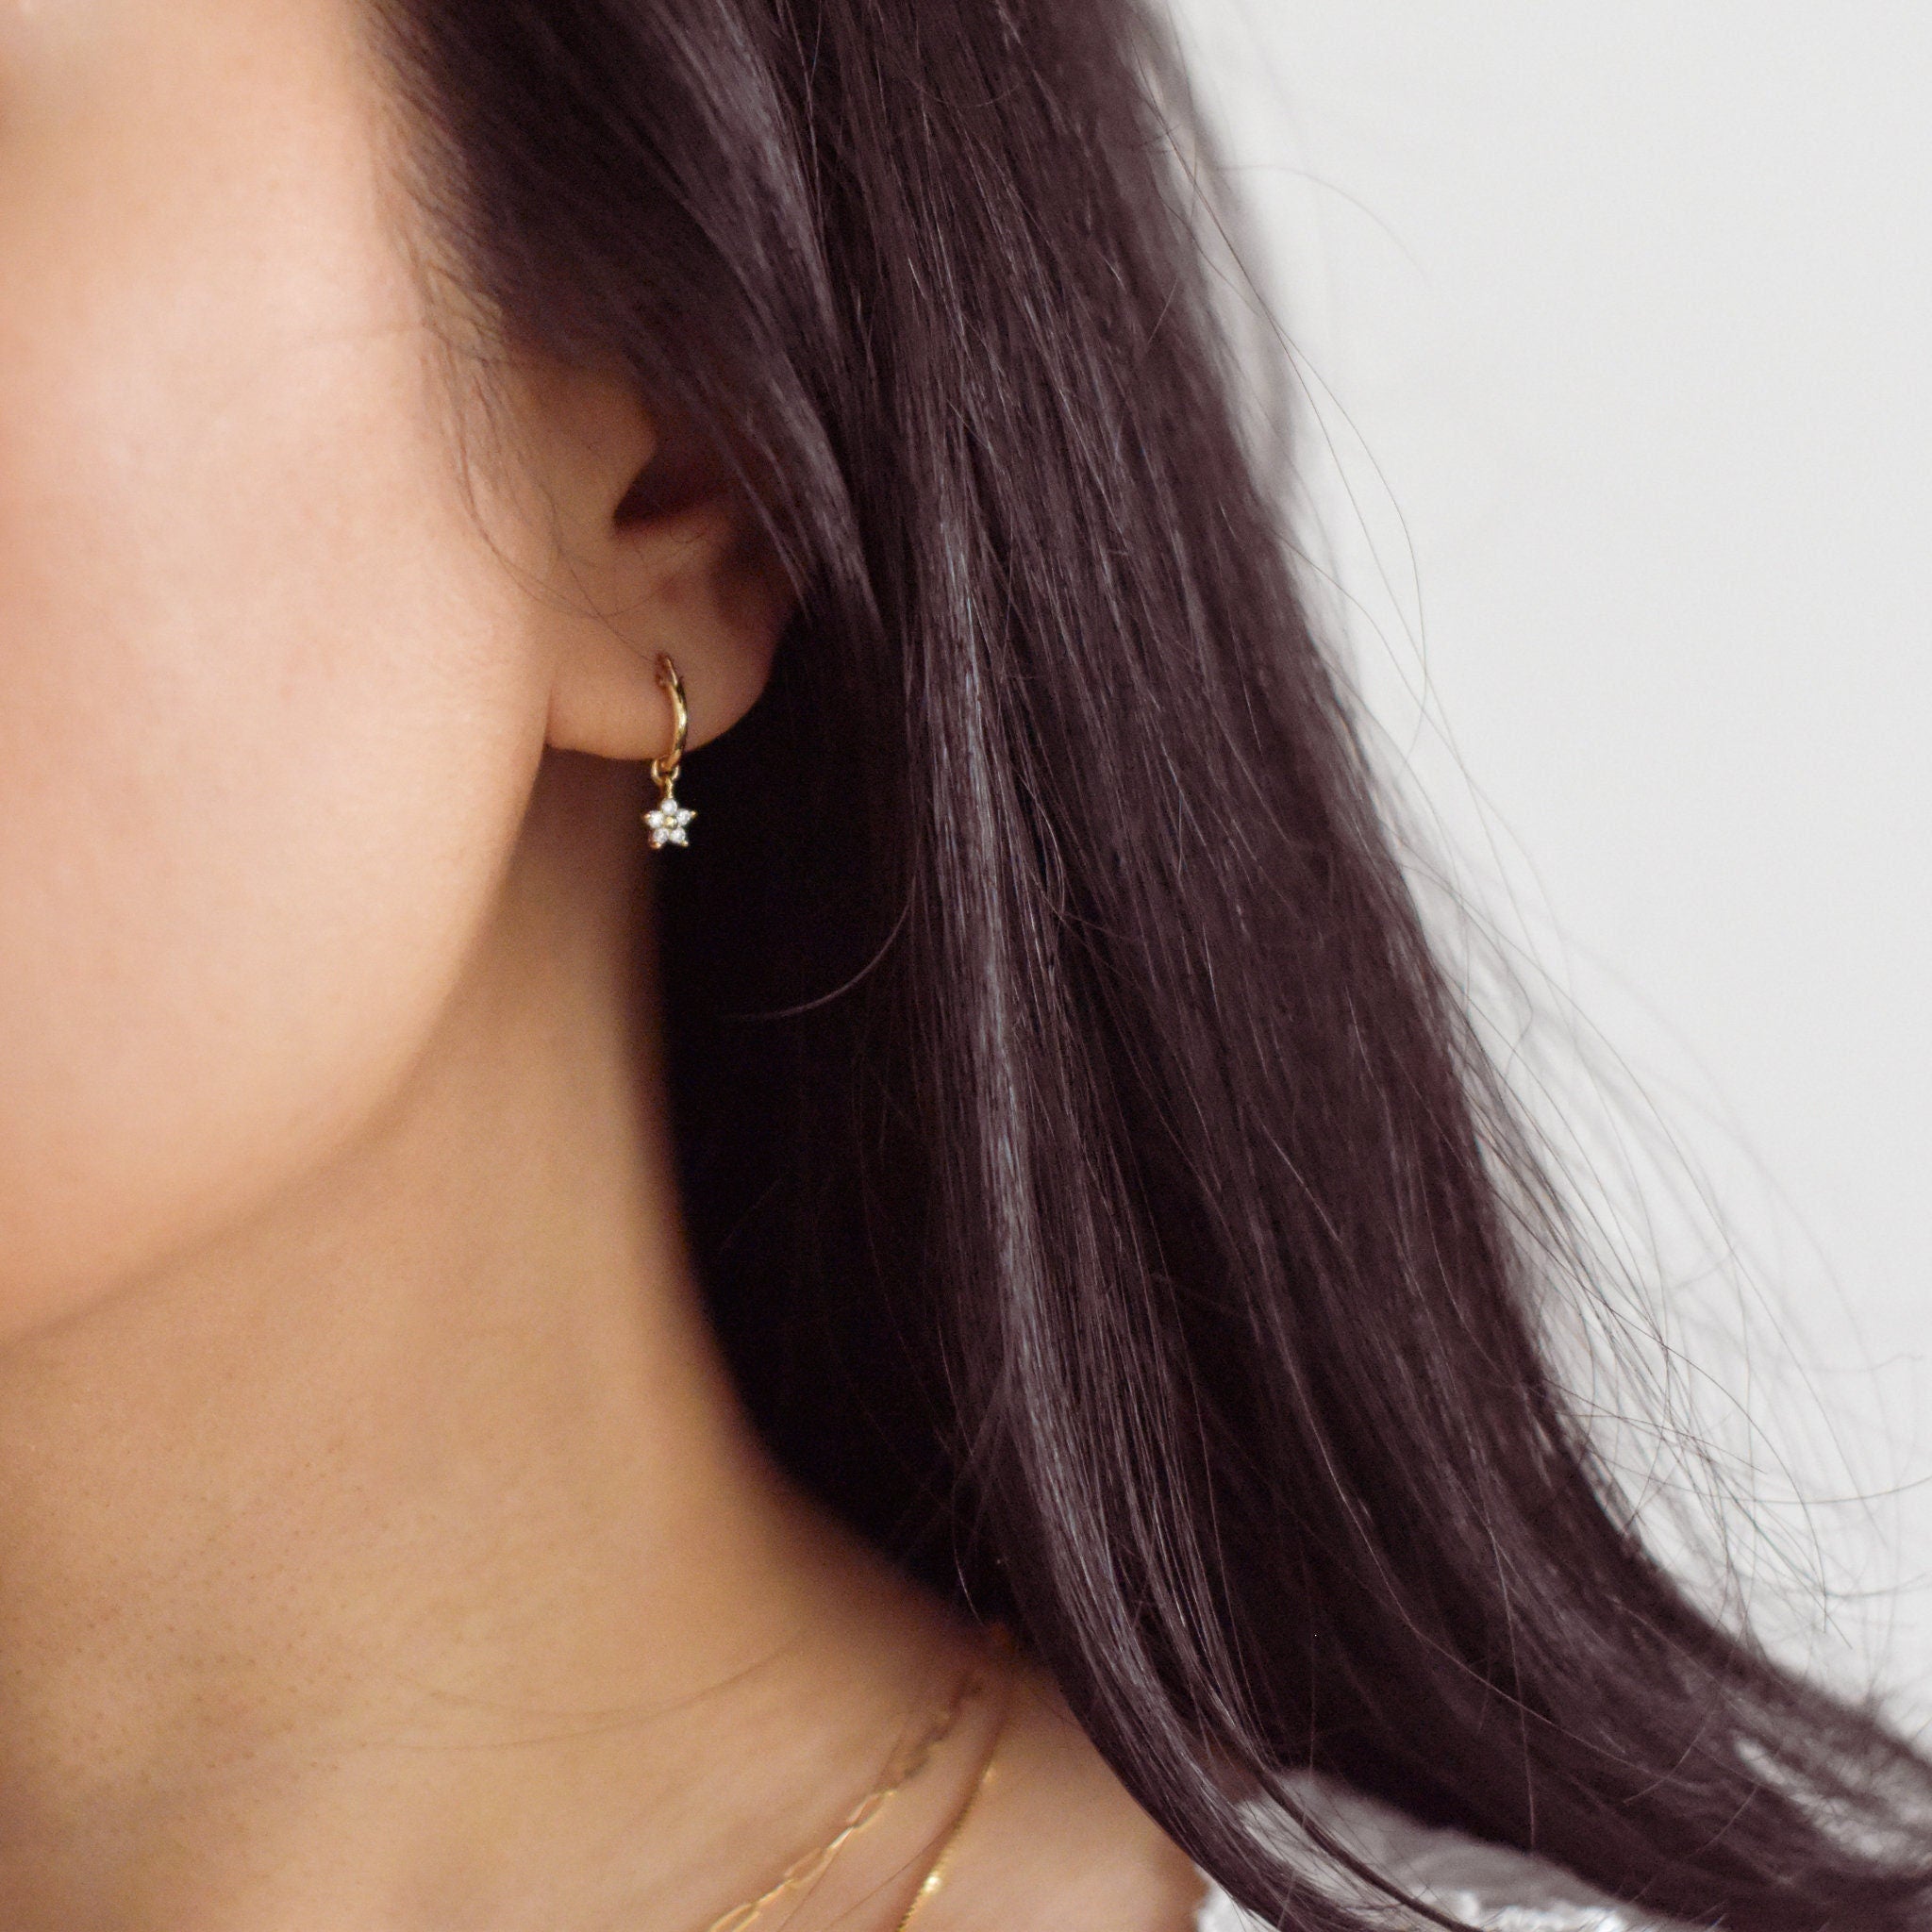 Daisy Huggie Earrings - Flower earrings, Daisy flower earrings, gold daisy earrings, cute earrings, pretty earrings |GFE00054